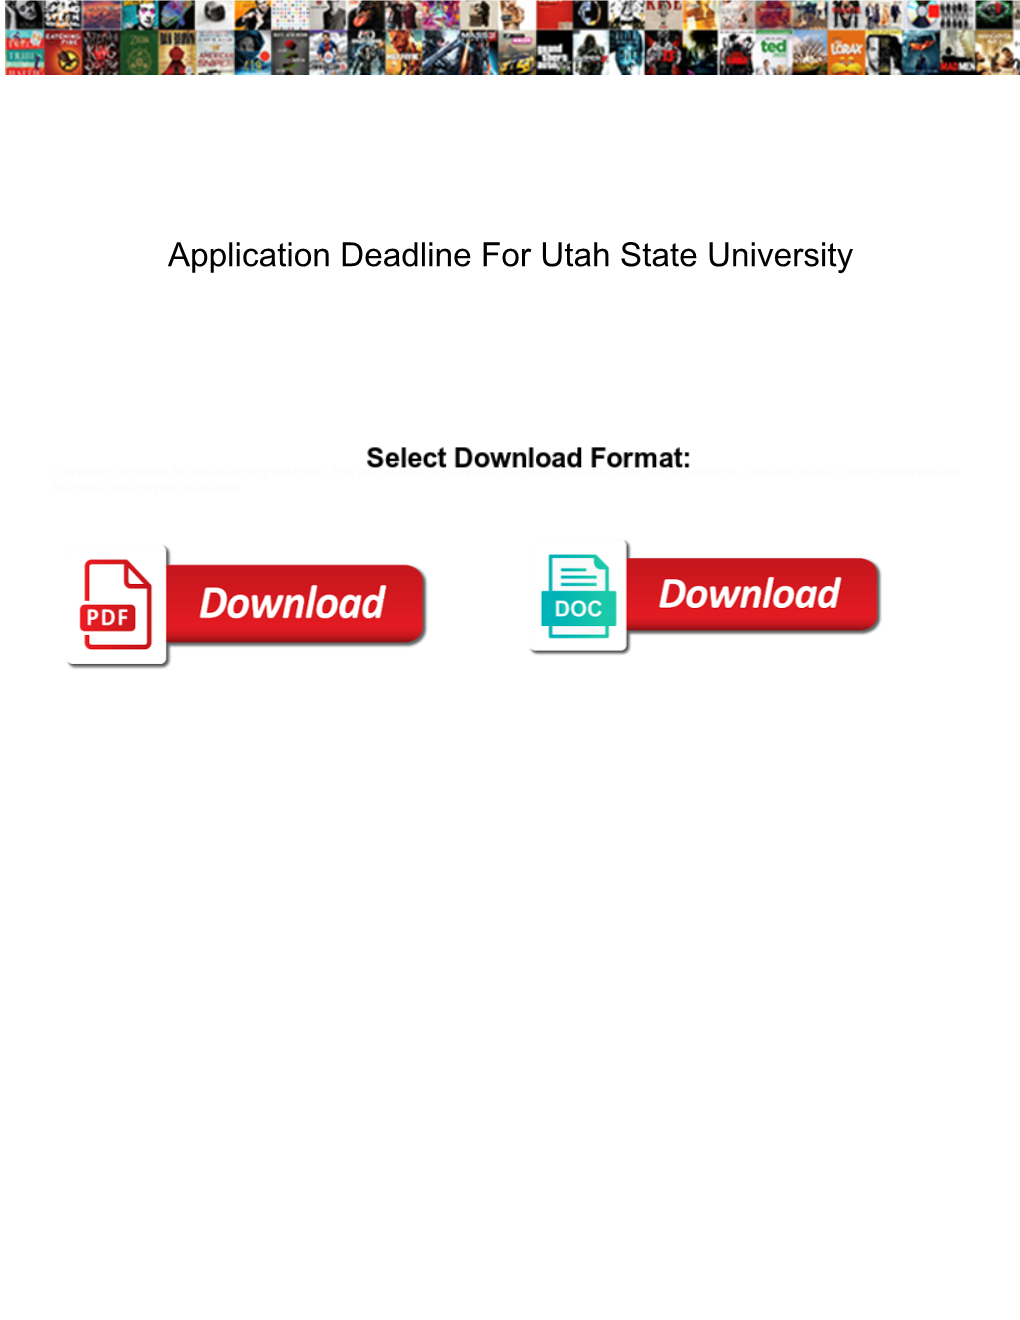 Application Deadline for Utah State University